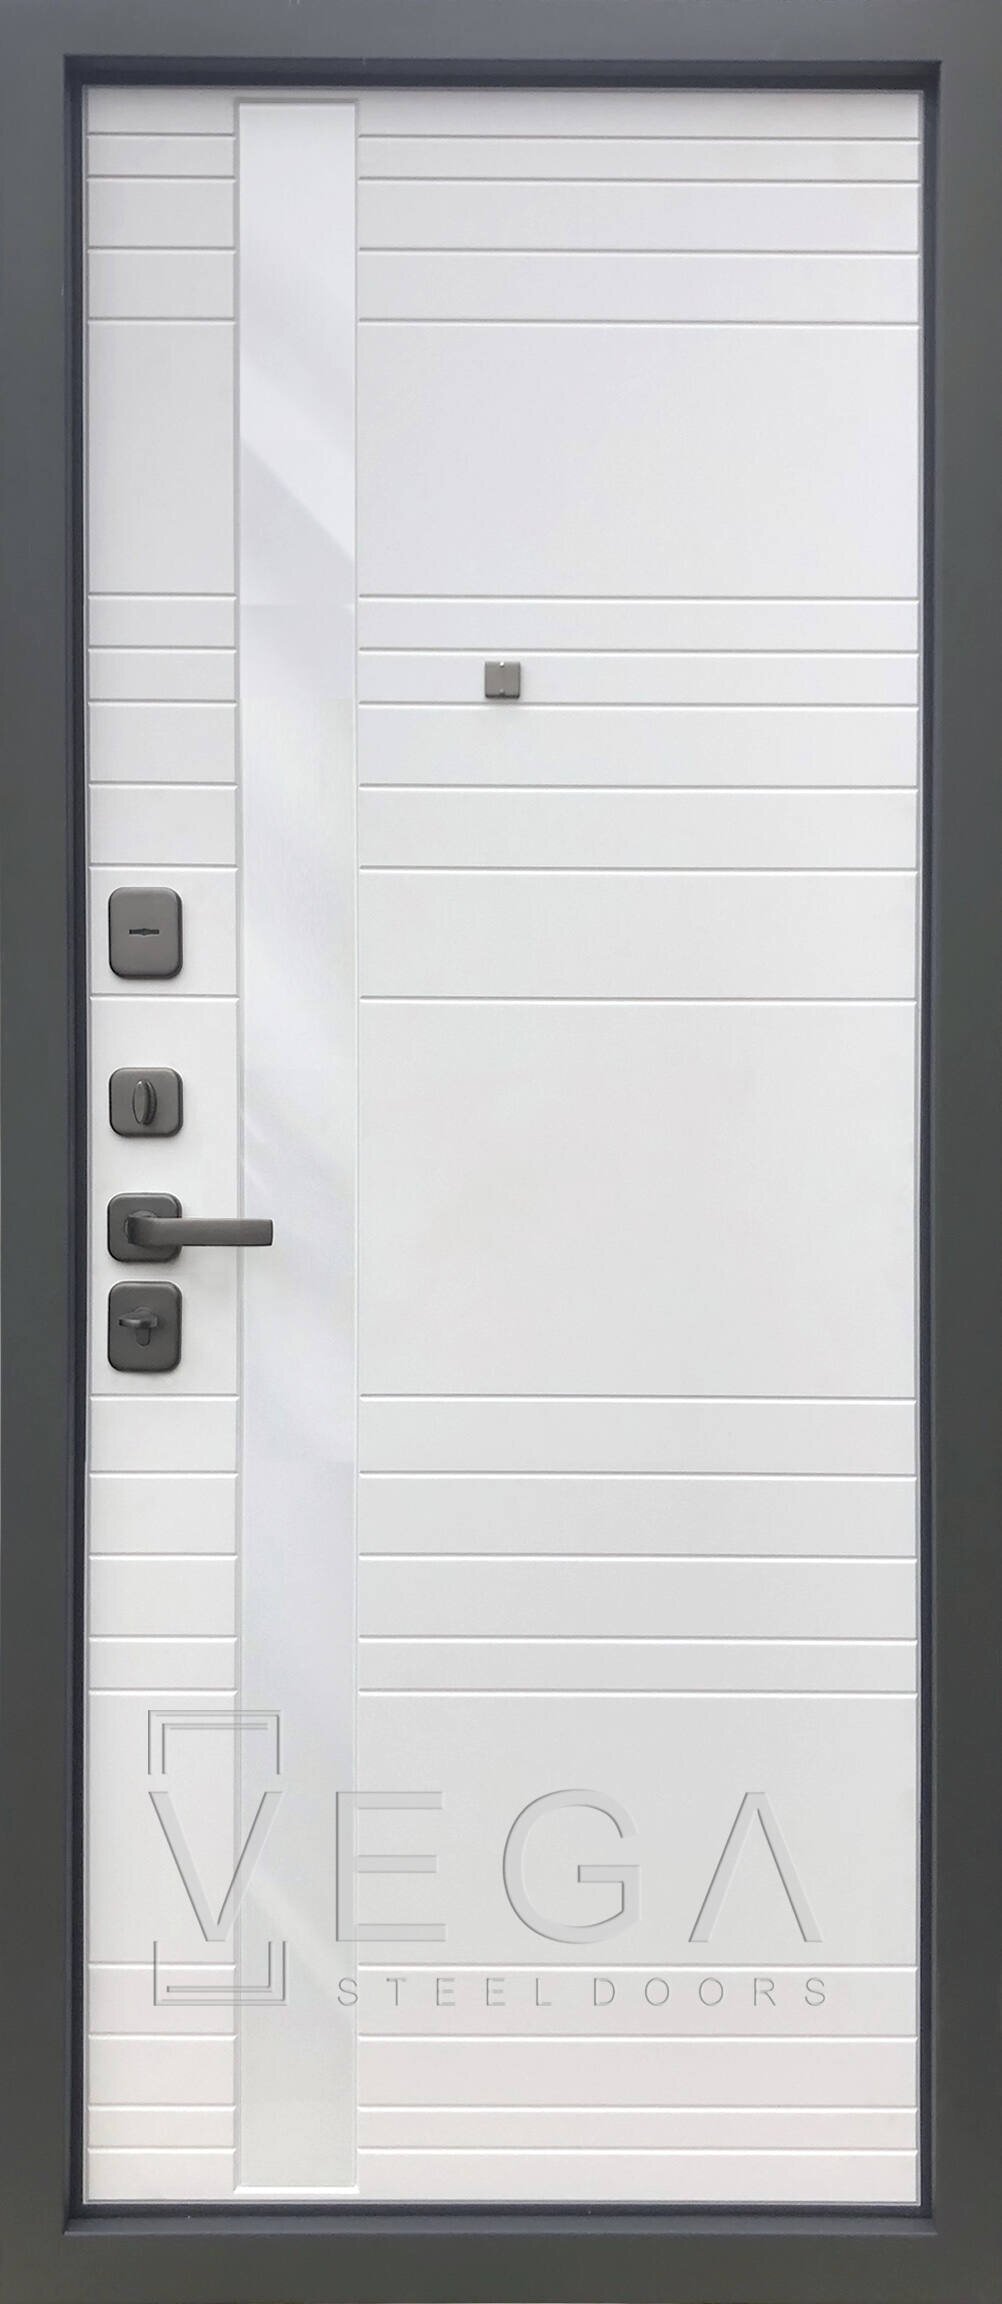 Фрезерованная МДФ панель 10 мм., цвет белый матовый под эмаль